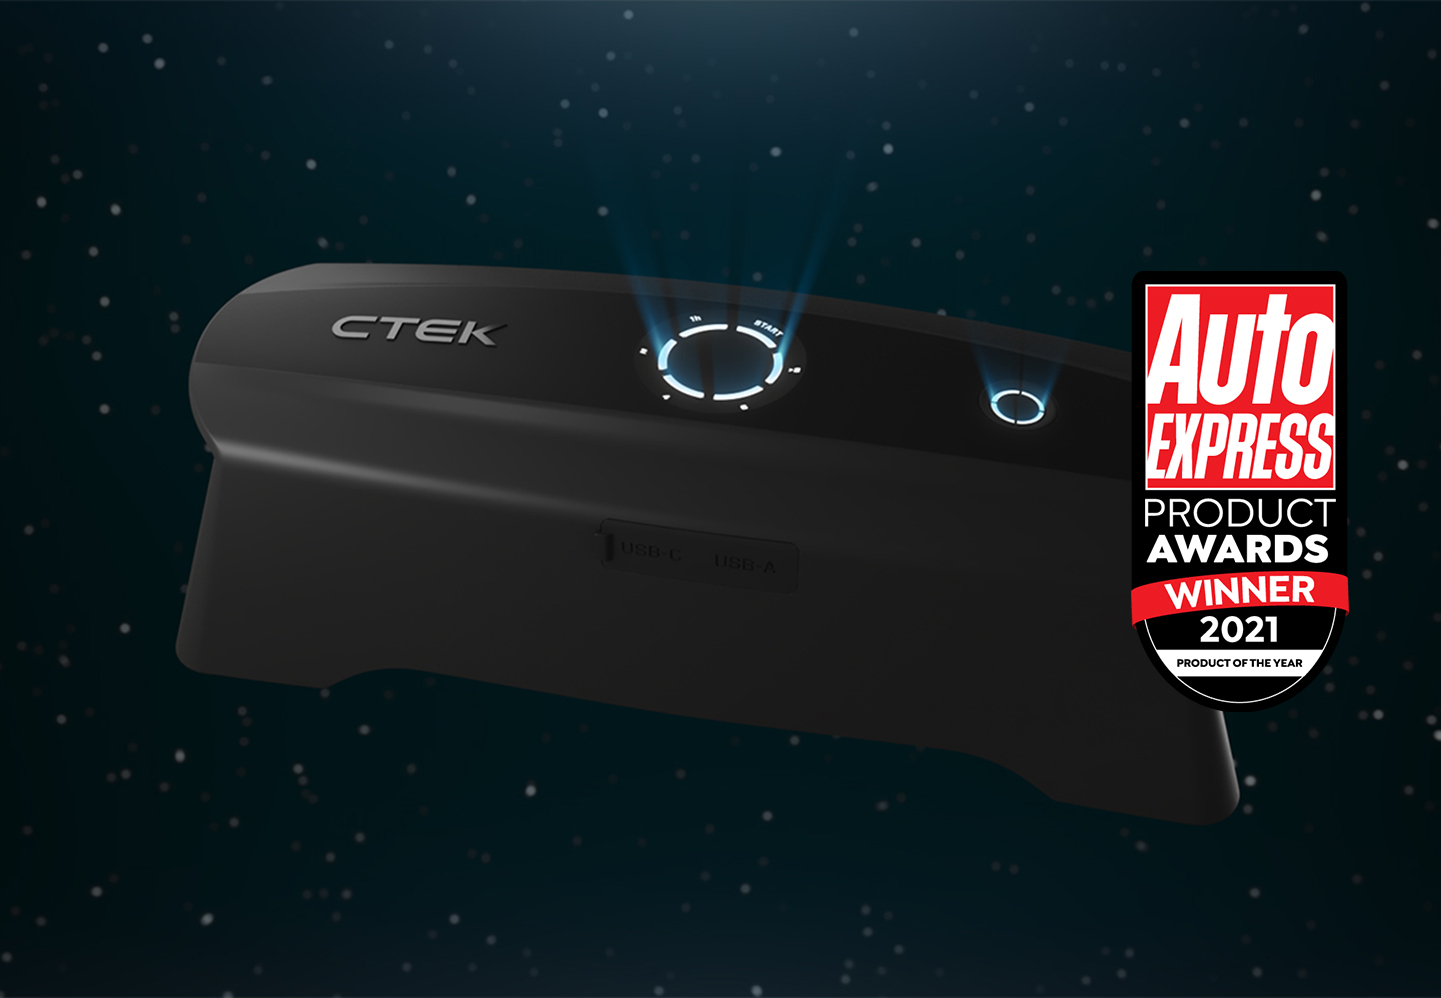 CTEK CS FREE Chargeur portable multifonctionnel 4-en-1 12V avec technologie Adaptive Boost, Référence: 40-462 - ctek.com